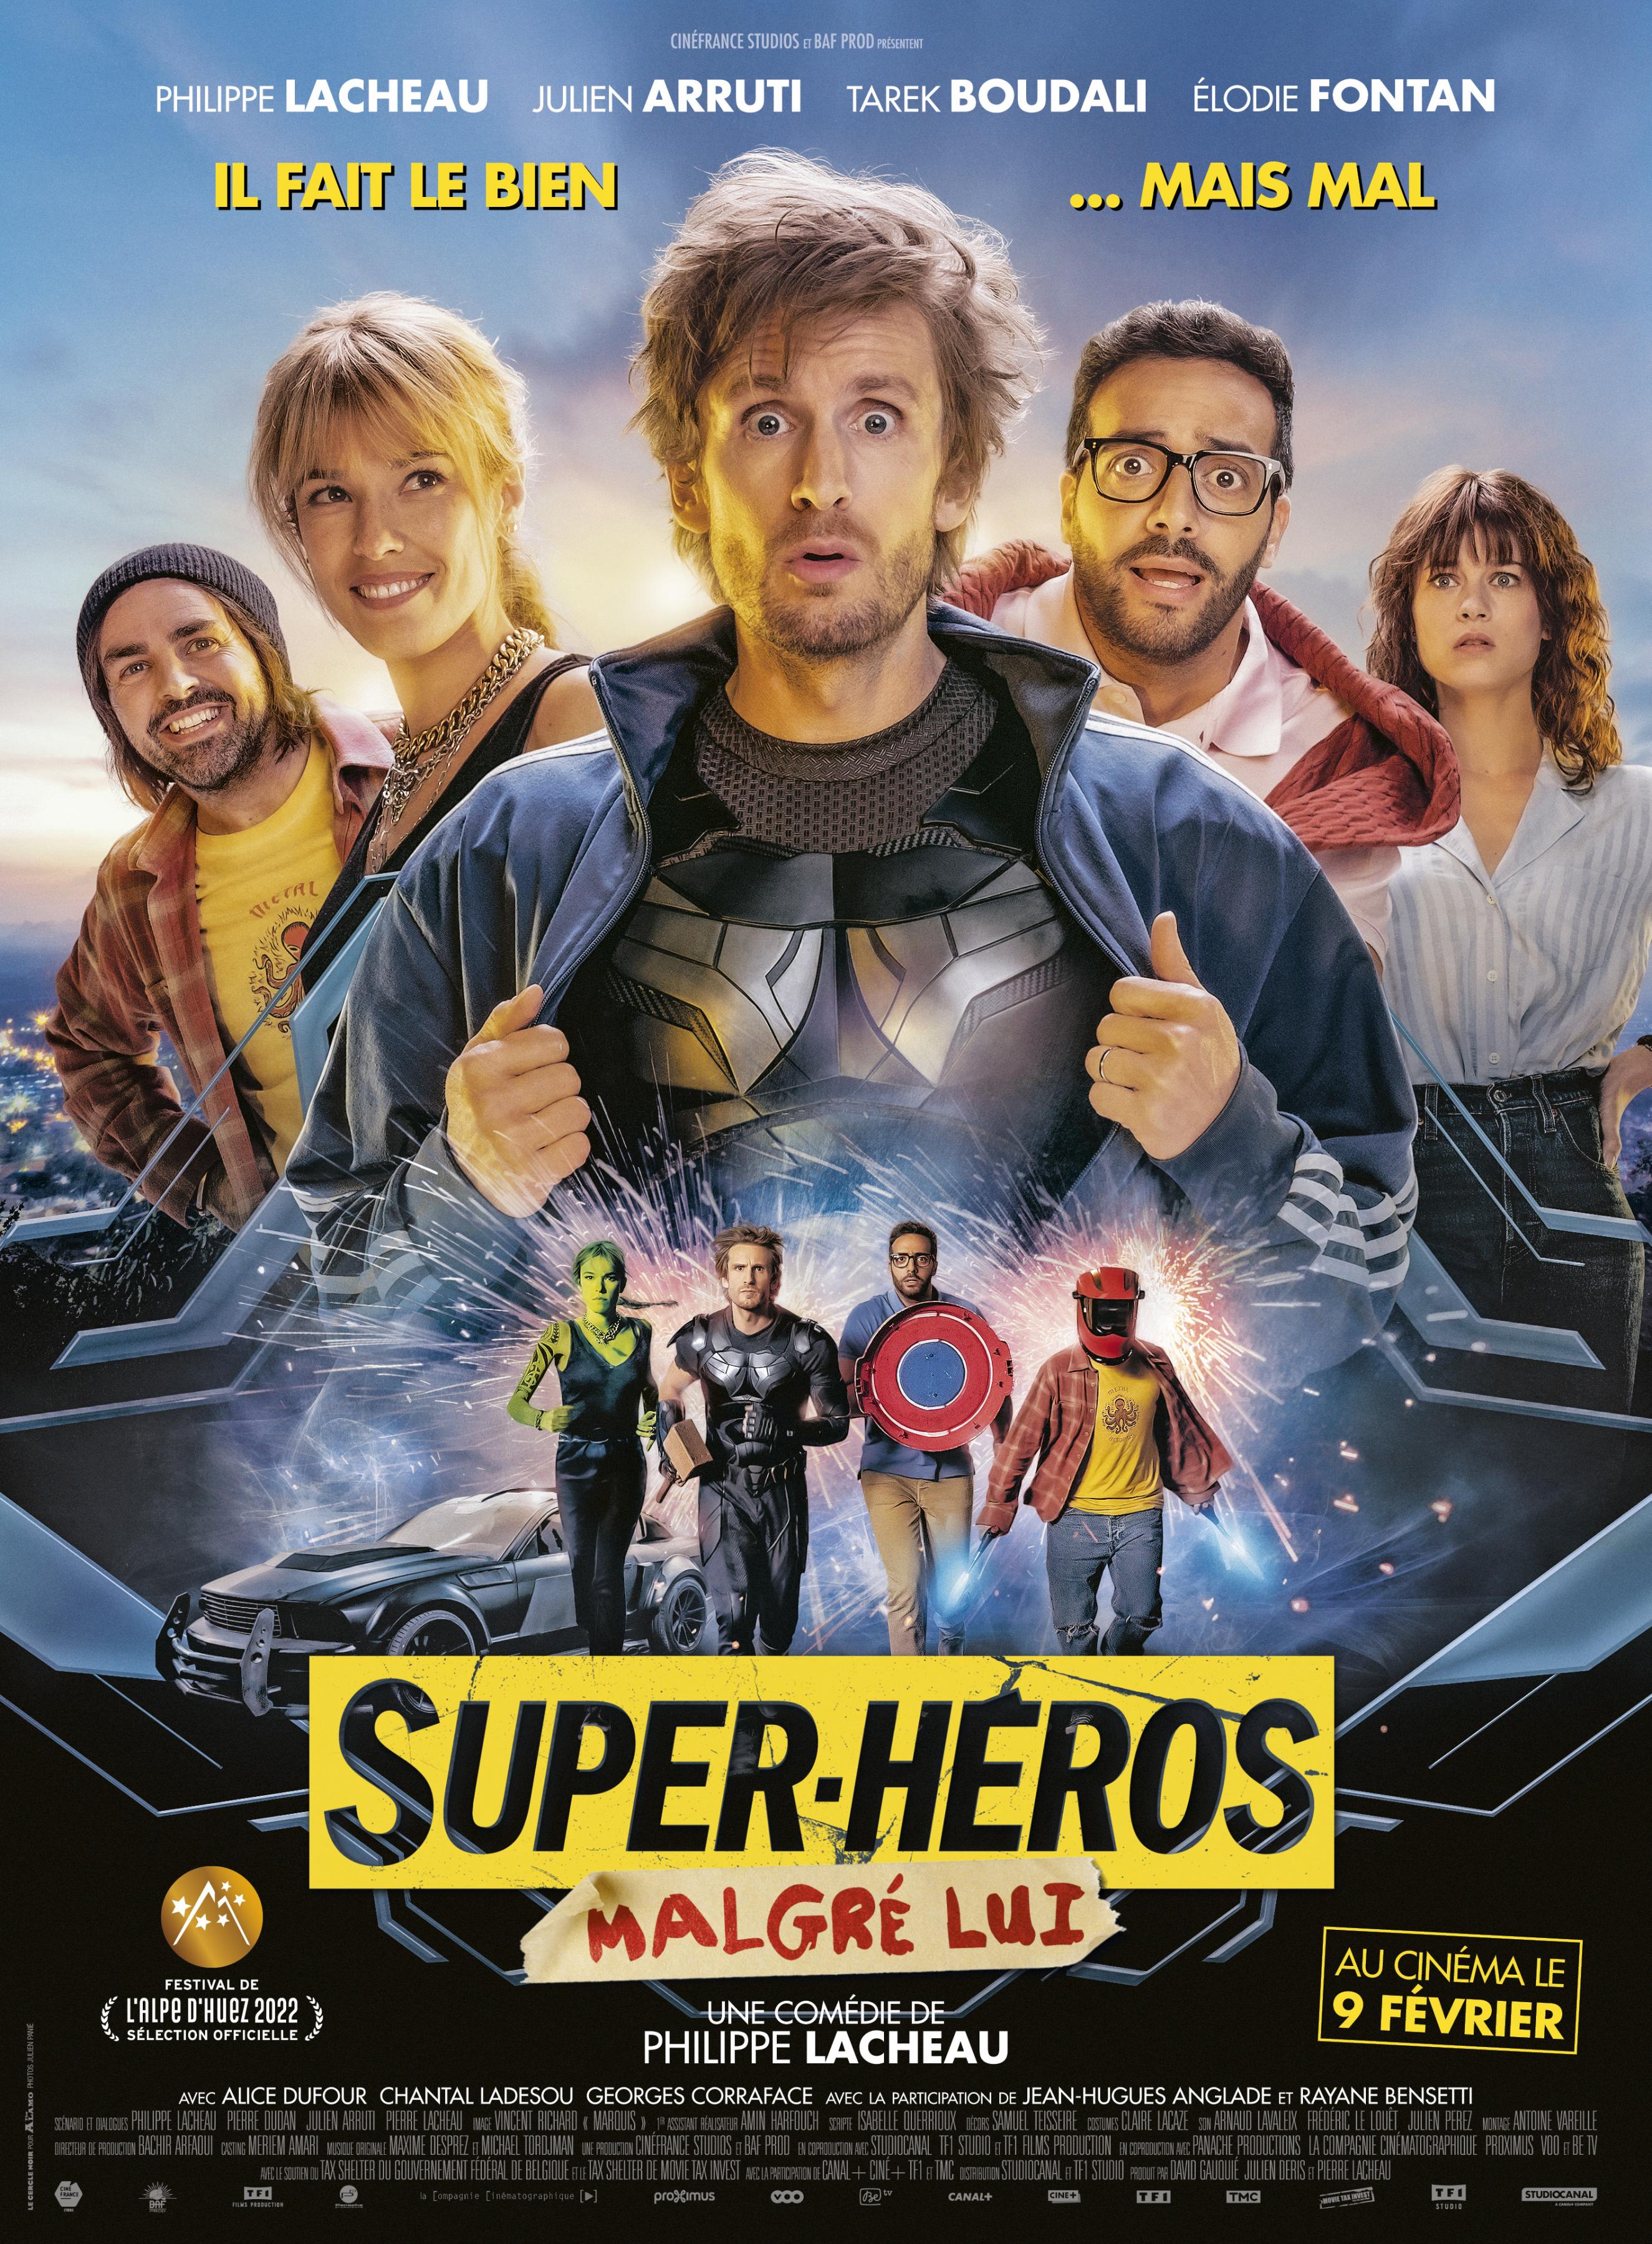 Постер фильма Суперчел | Super-héros malgré lui